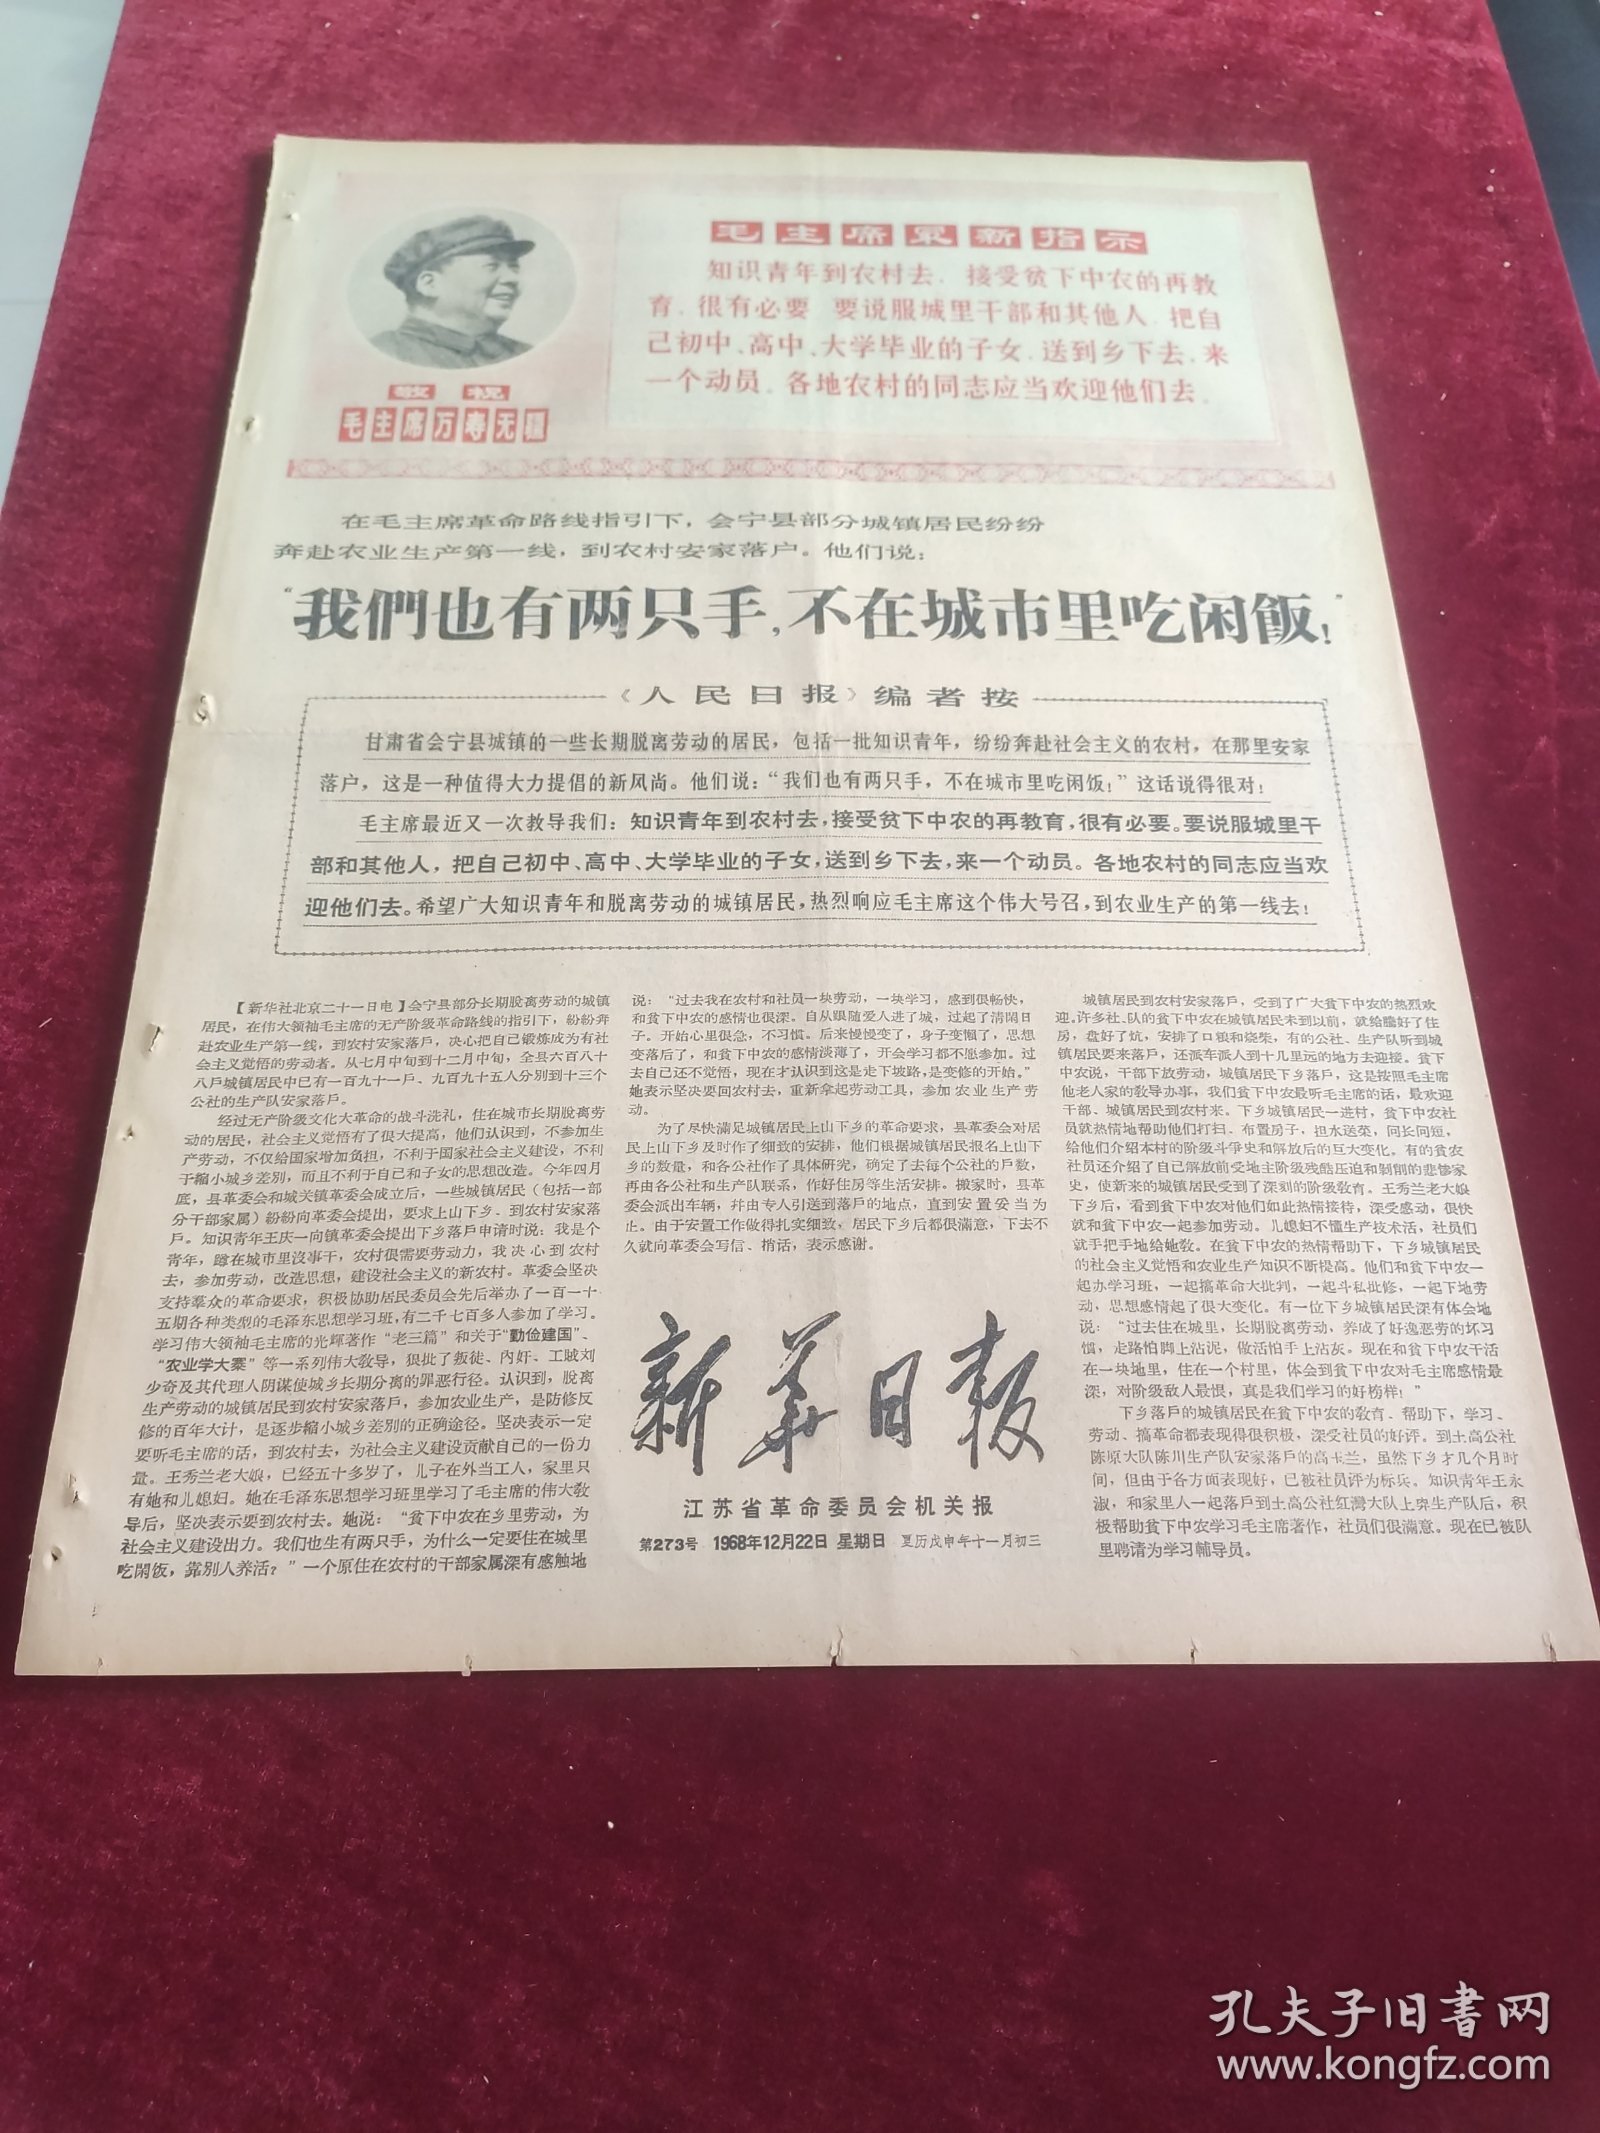 新华日报1968年12月22日1~4版坚决执行伟大领袖毛主席最新指示